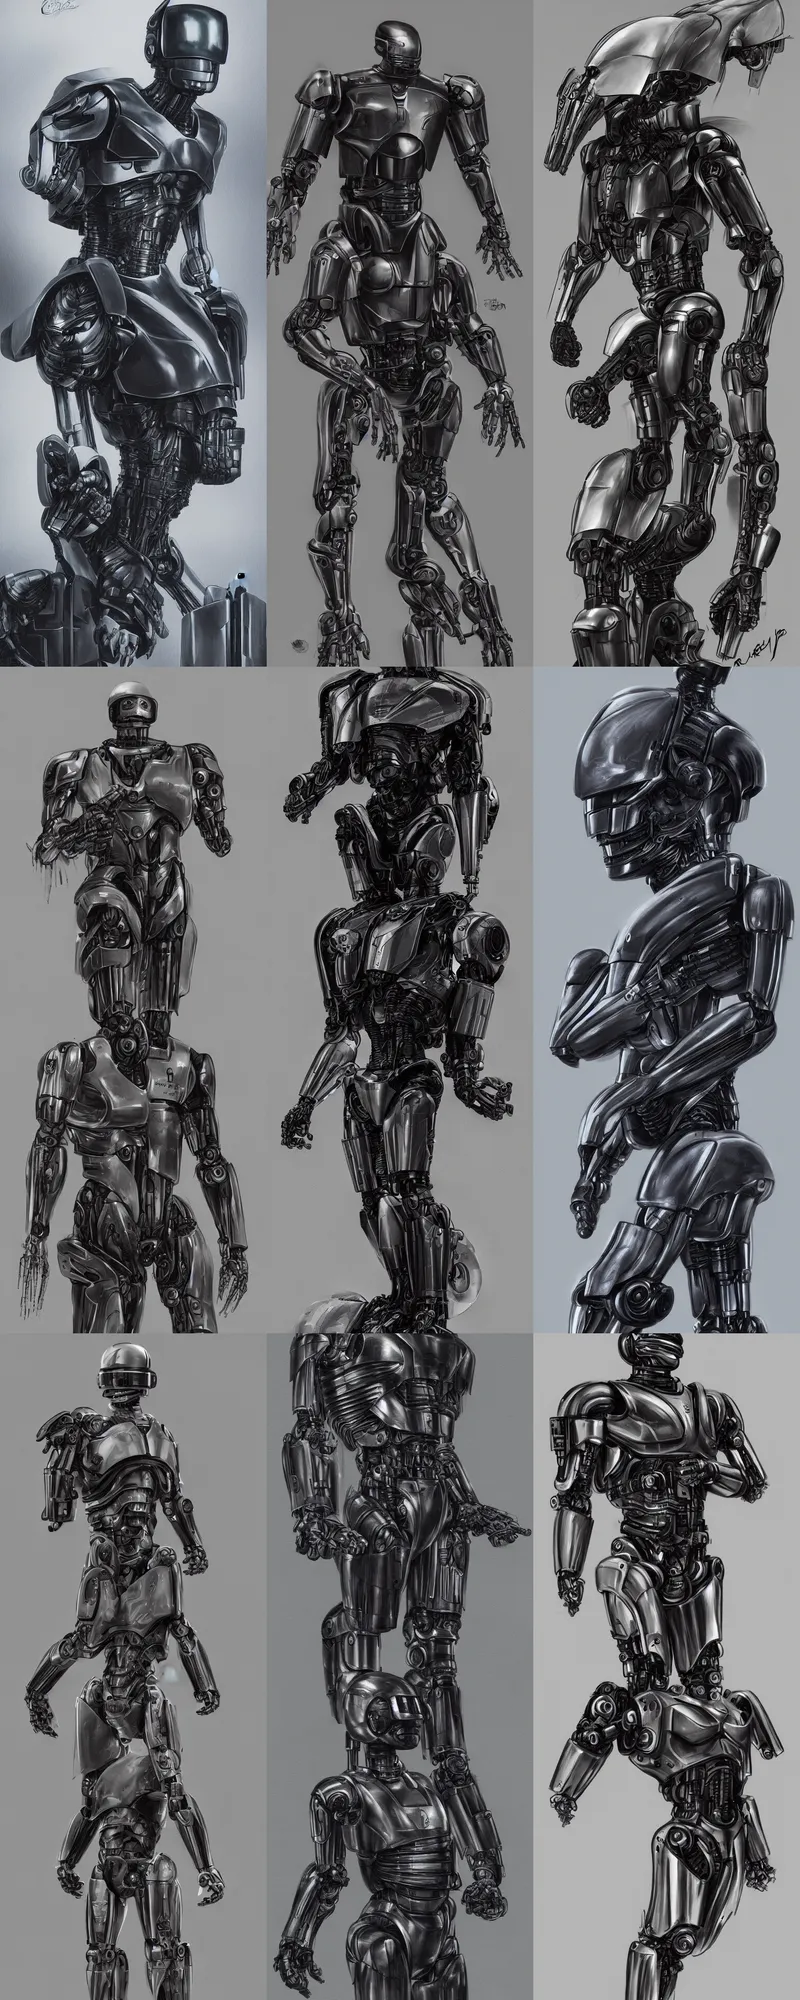 Prompt: Robocop concept art by H.R. Giger, trending on Artstation, cinematic, 4K